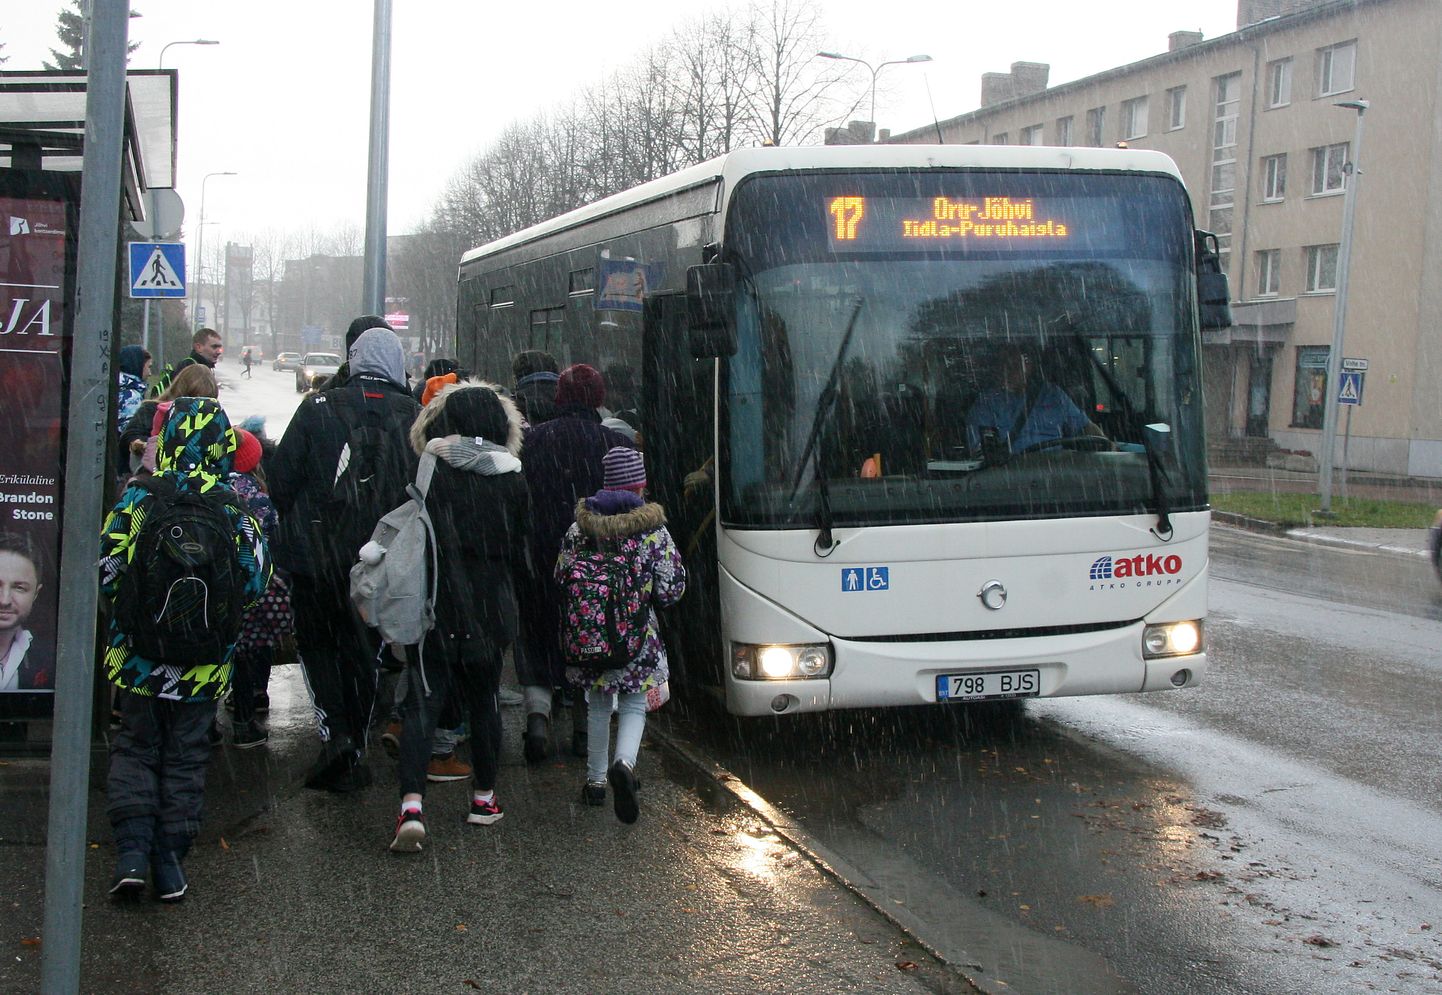 ATKO Liinide bussid on Kohtla-Järve tänavatel kurseerinud juba ligi kaheksa aastat, kuid suve lõpus saab senise vedajaga sõlmitud lepingu tähtaeg läbi.